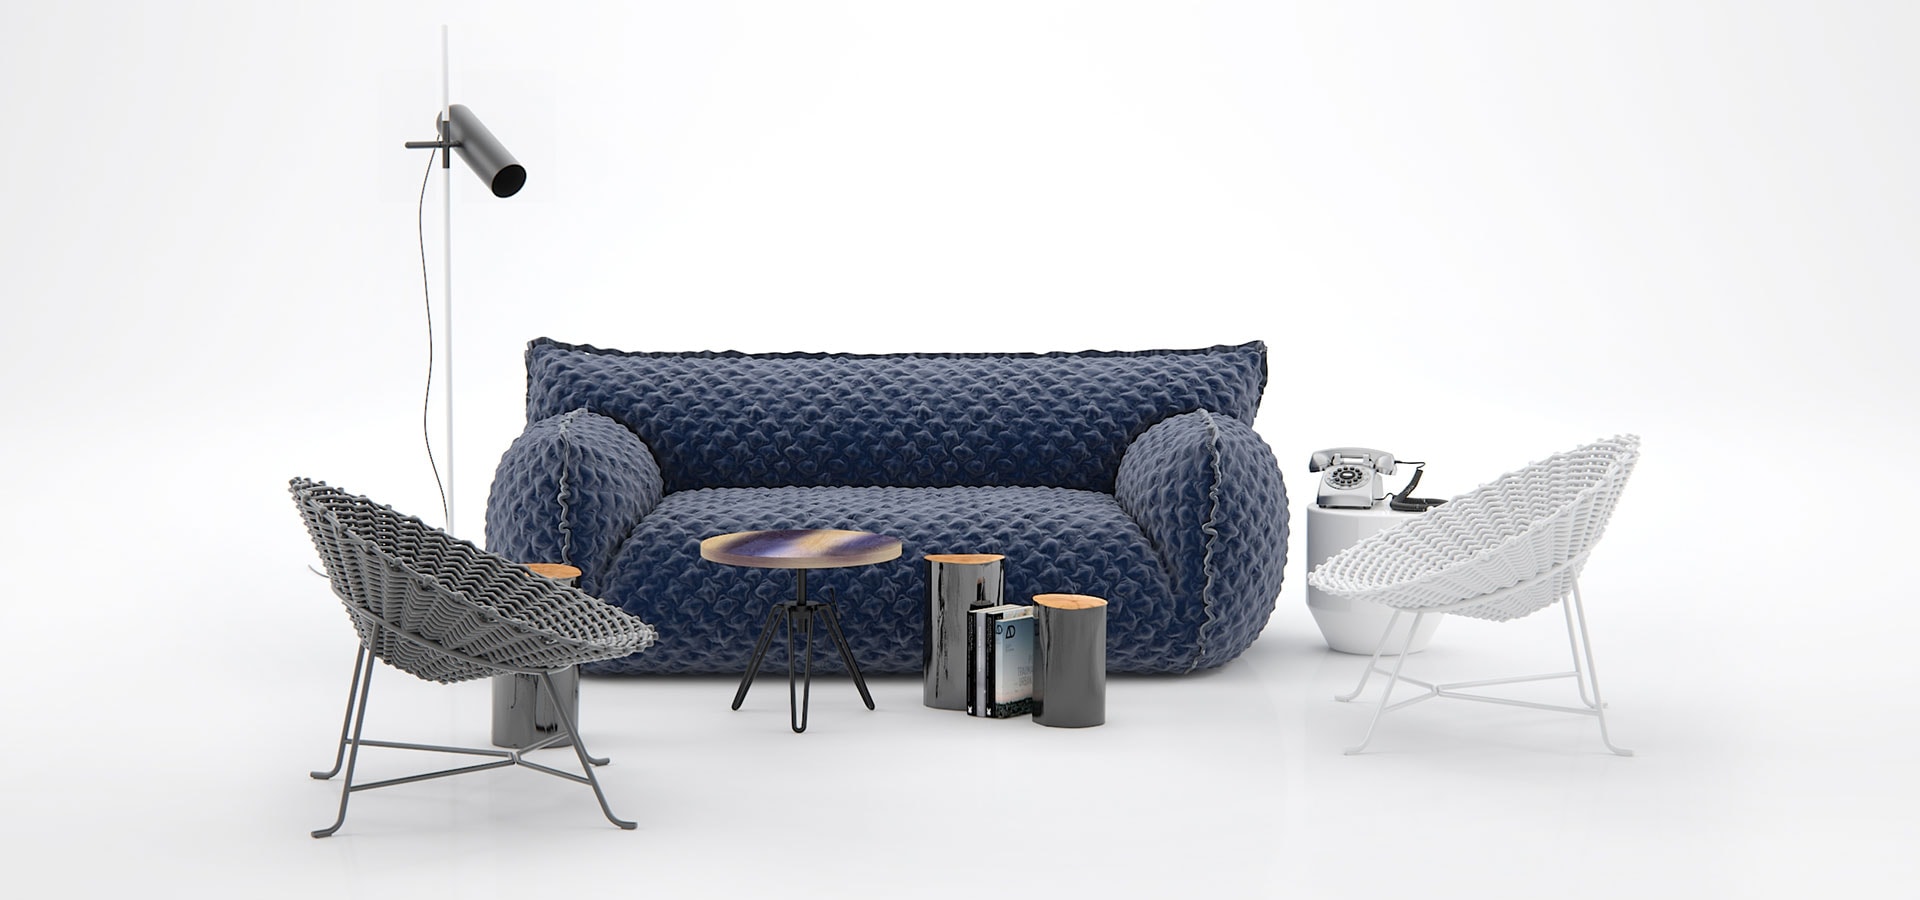 Design Connected 3d Models Of Furniture For Interior Design